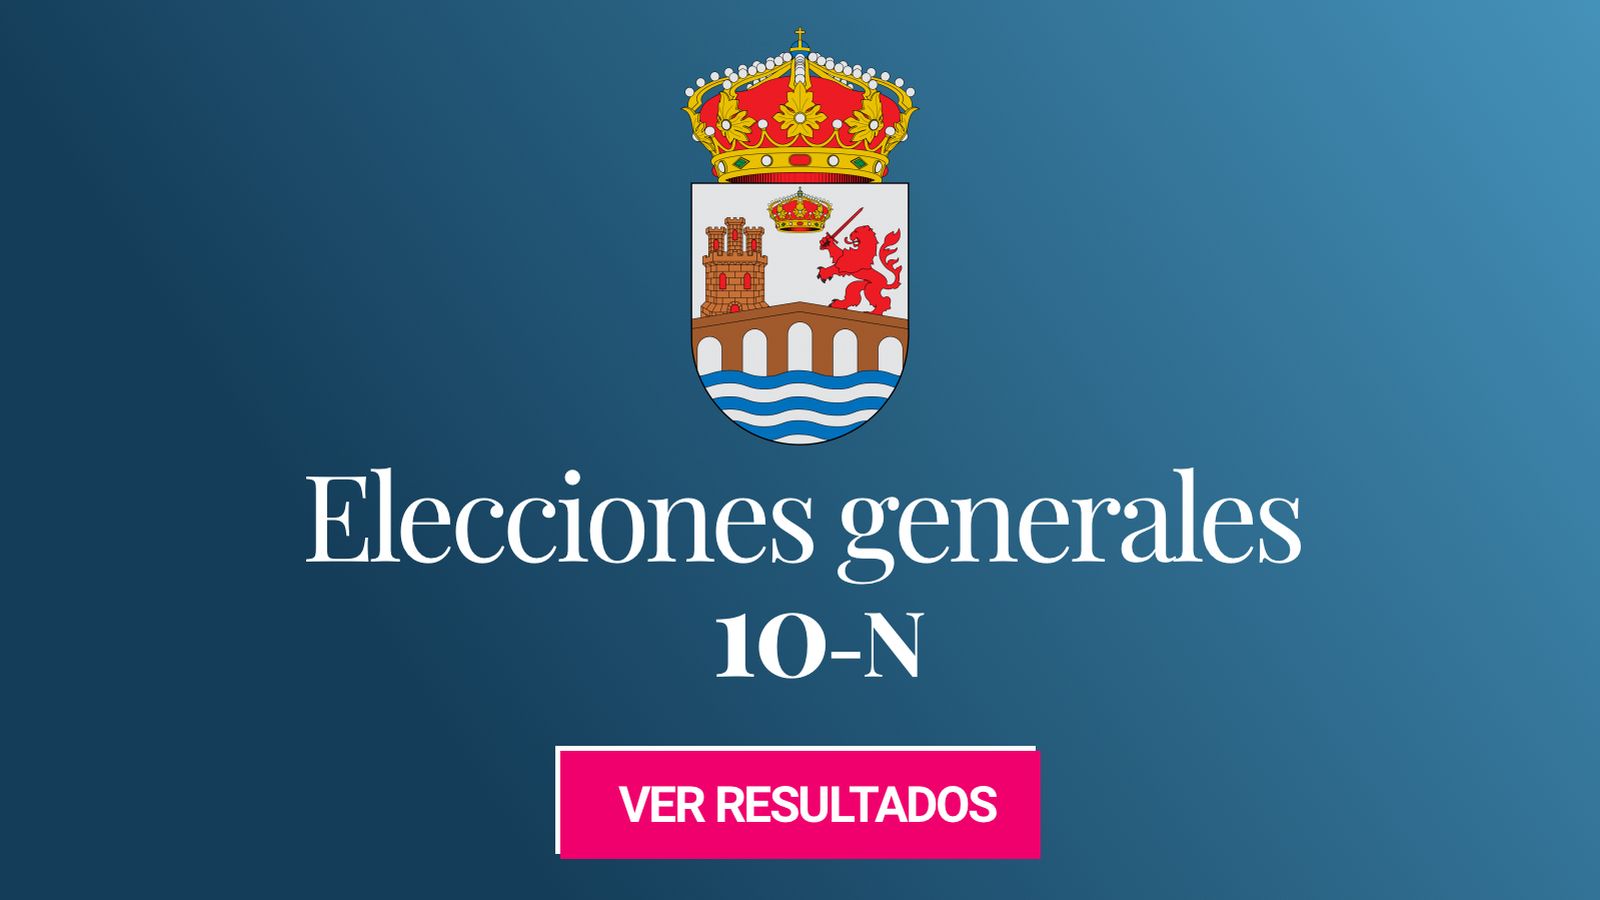 Foto: Elecciones generales 2019 en la provincia de Ourense. (C.C./HansenBCN)